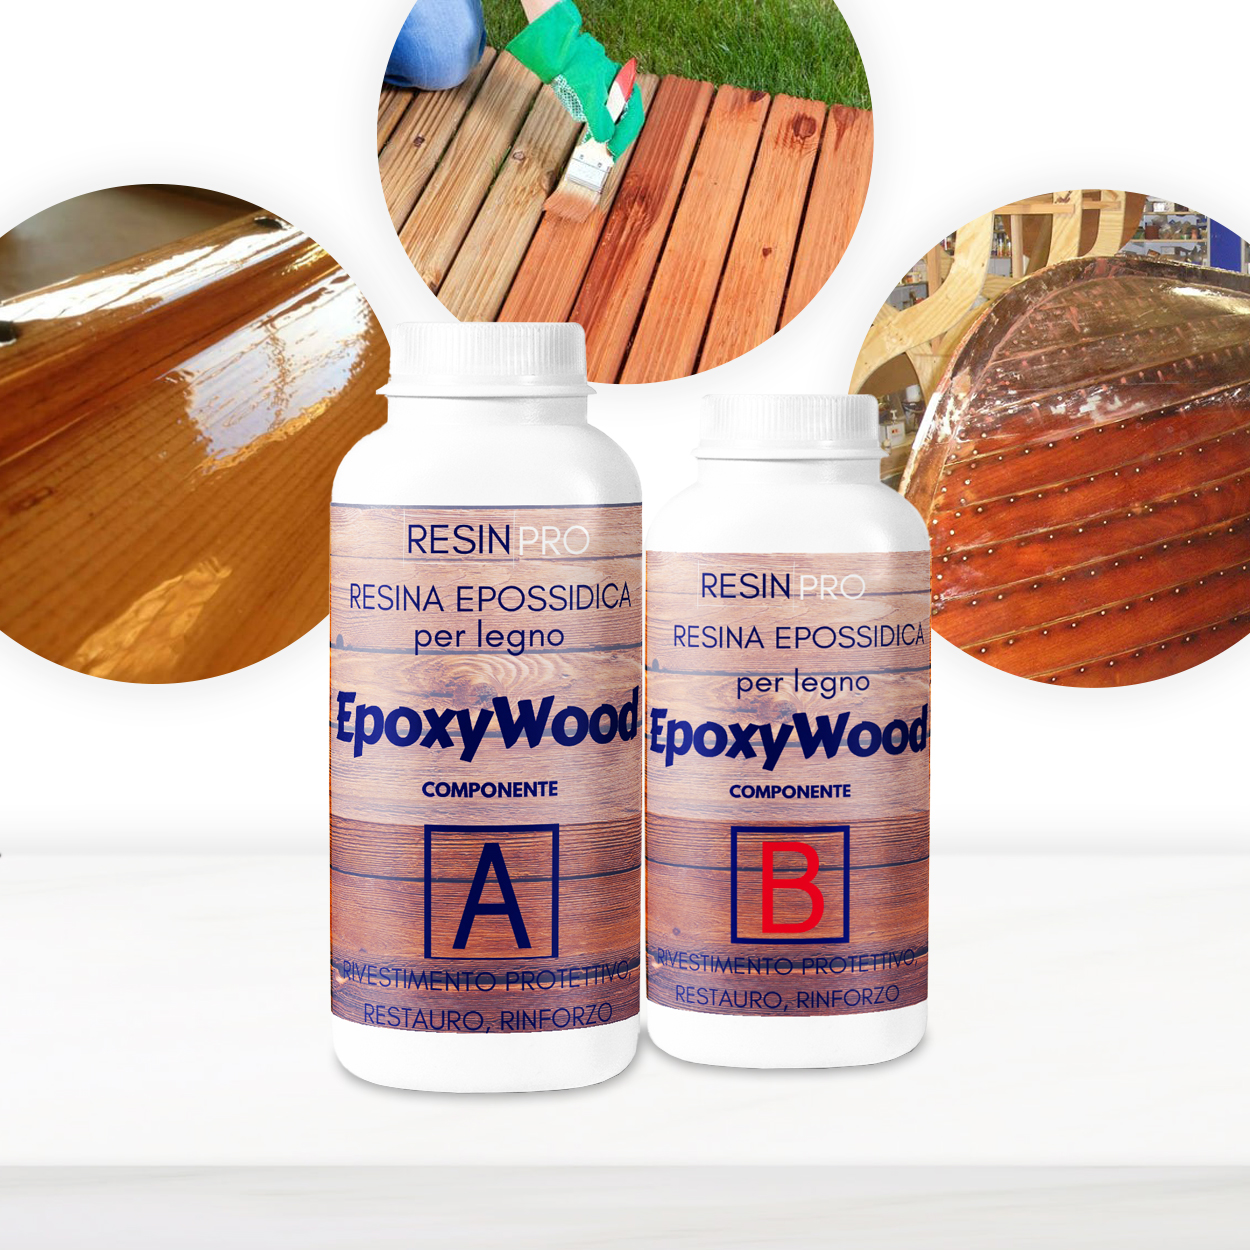 EPOXYWOOD Résine époxy pour bois - revêtement de protection